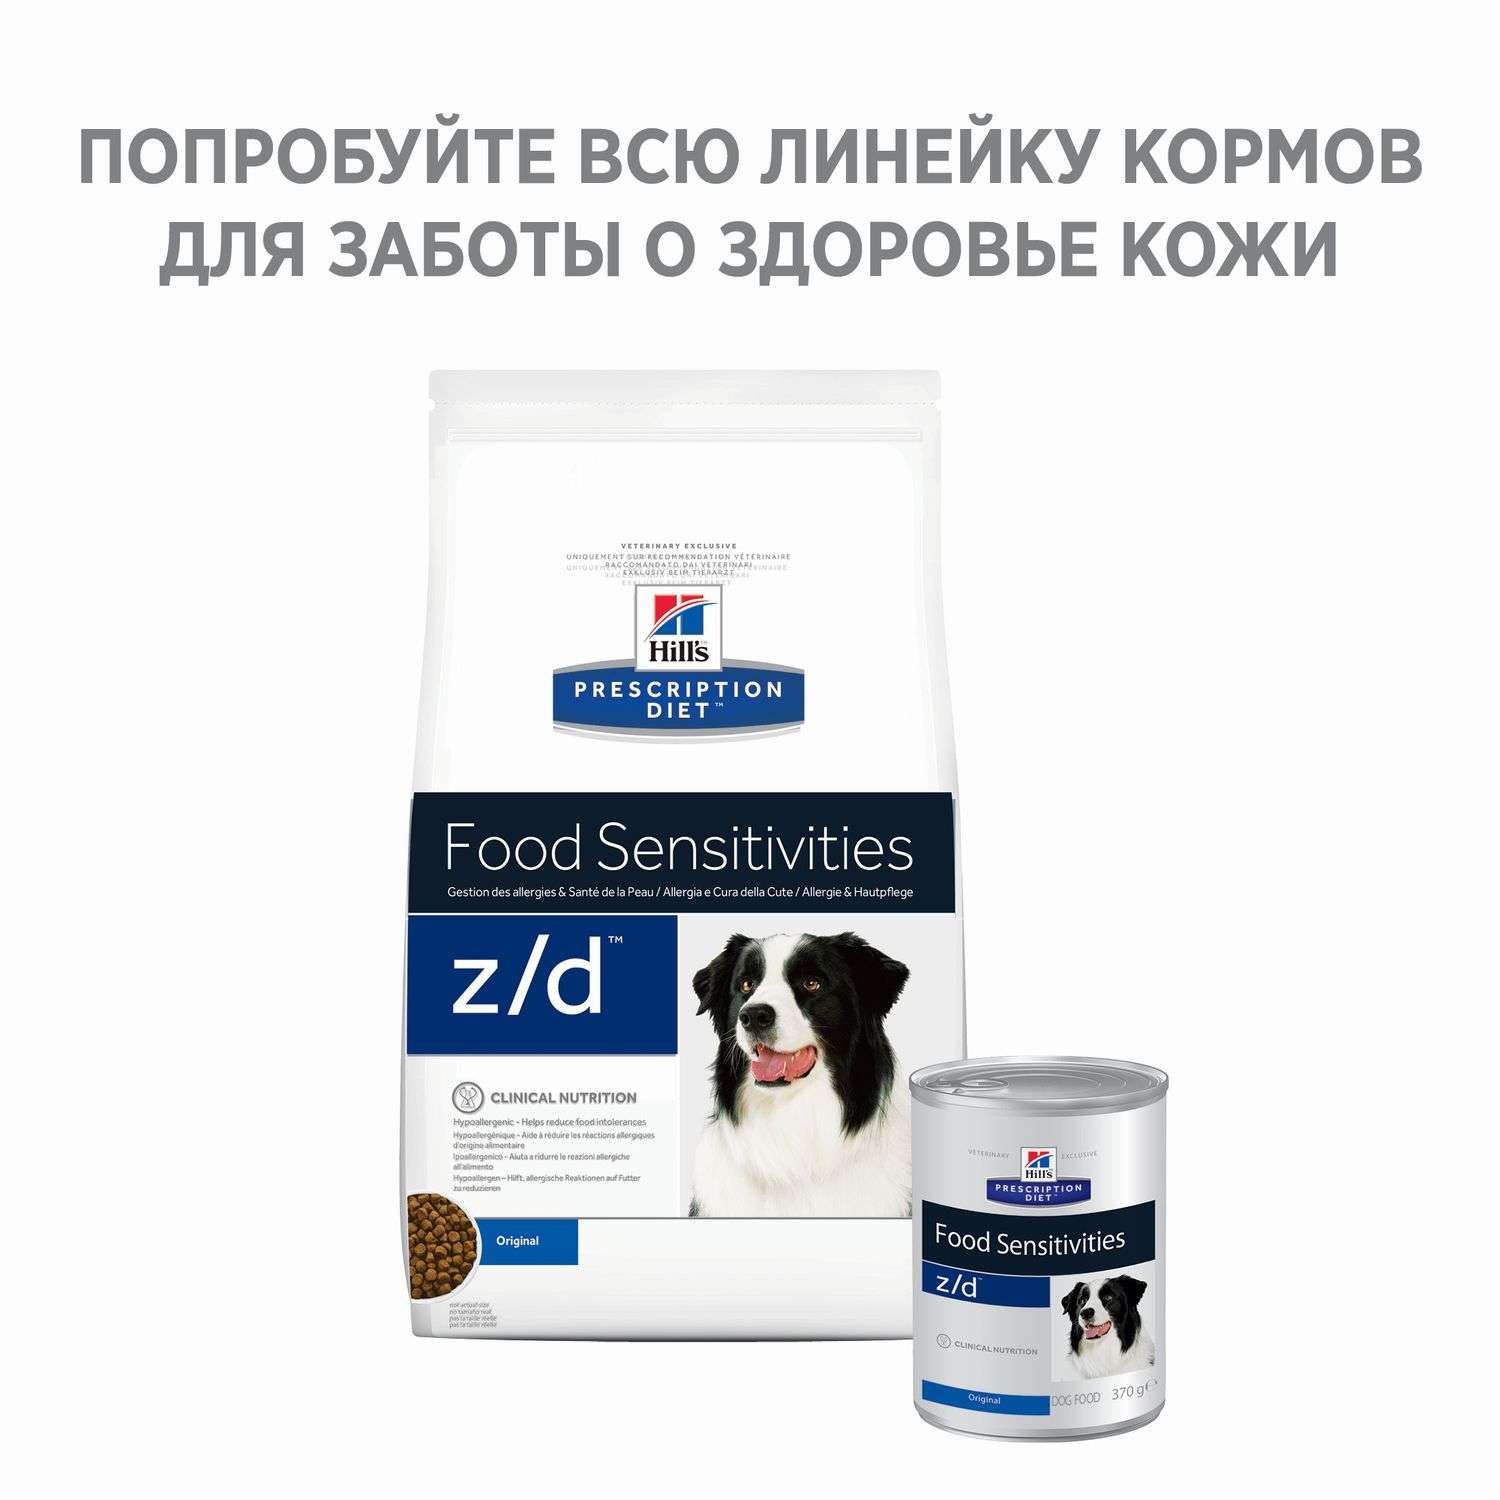 Корм для собак HILLS 10кг Prescription Diet z/d Food Sensitivities для здоровой кожи при аллергии и заболеваниях кожи сухой - фото 3